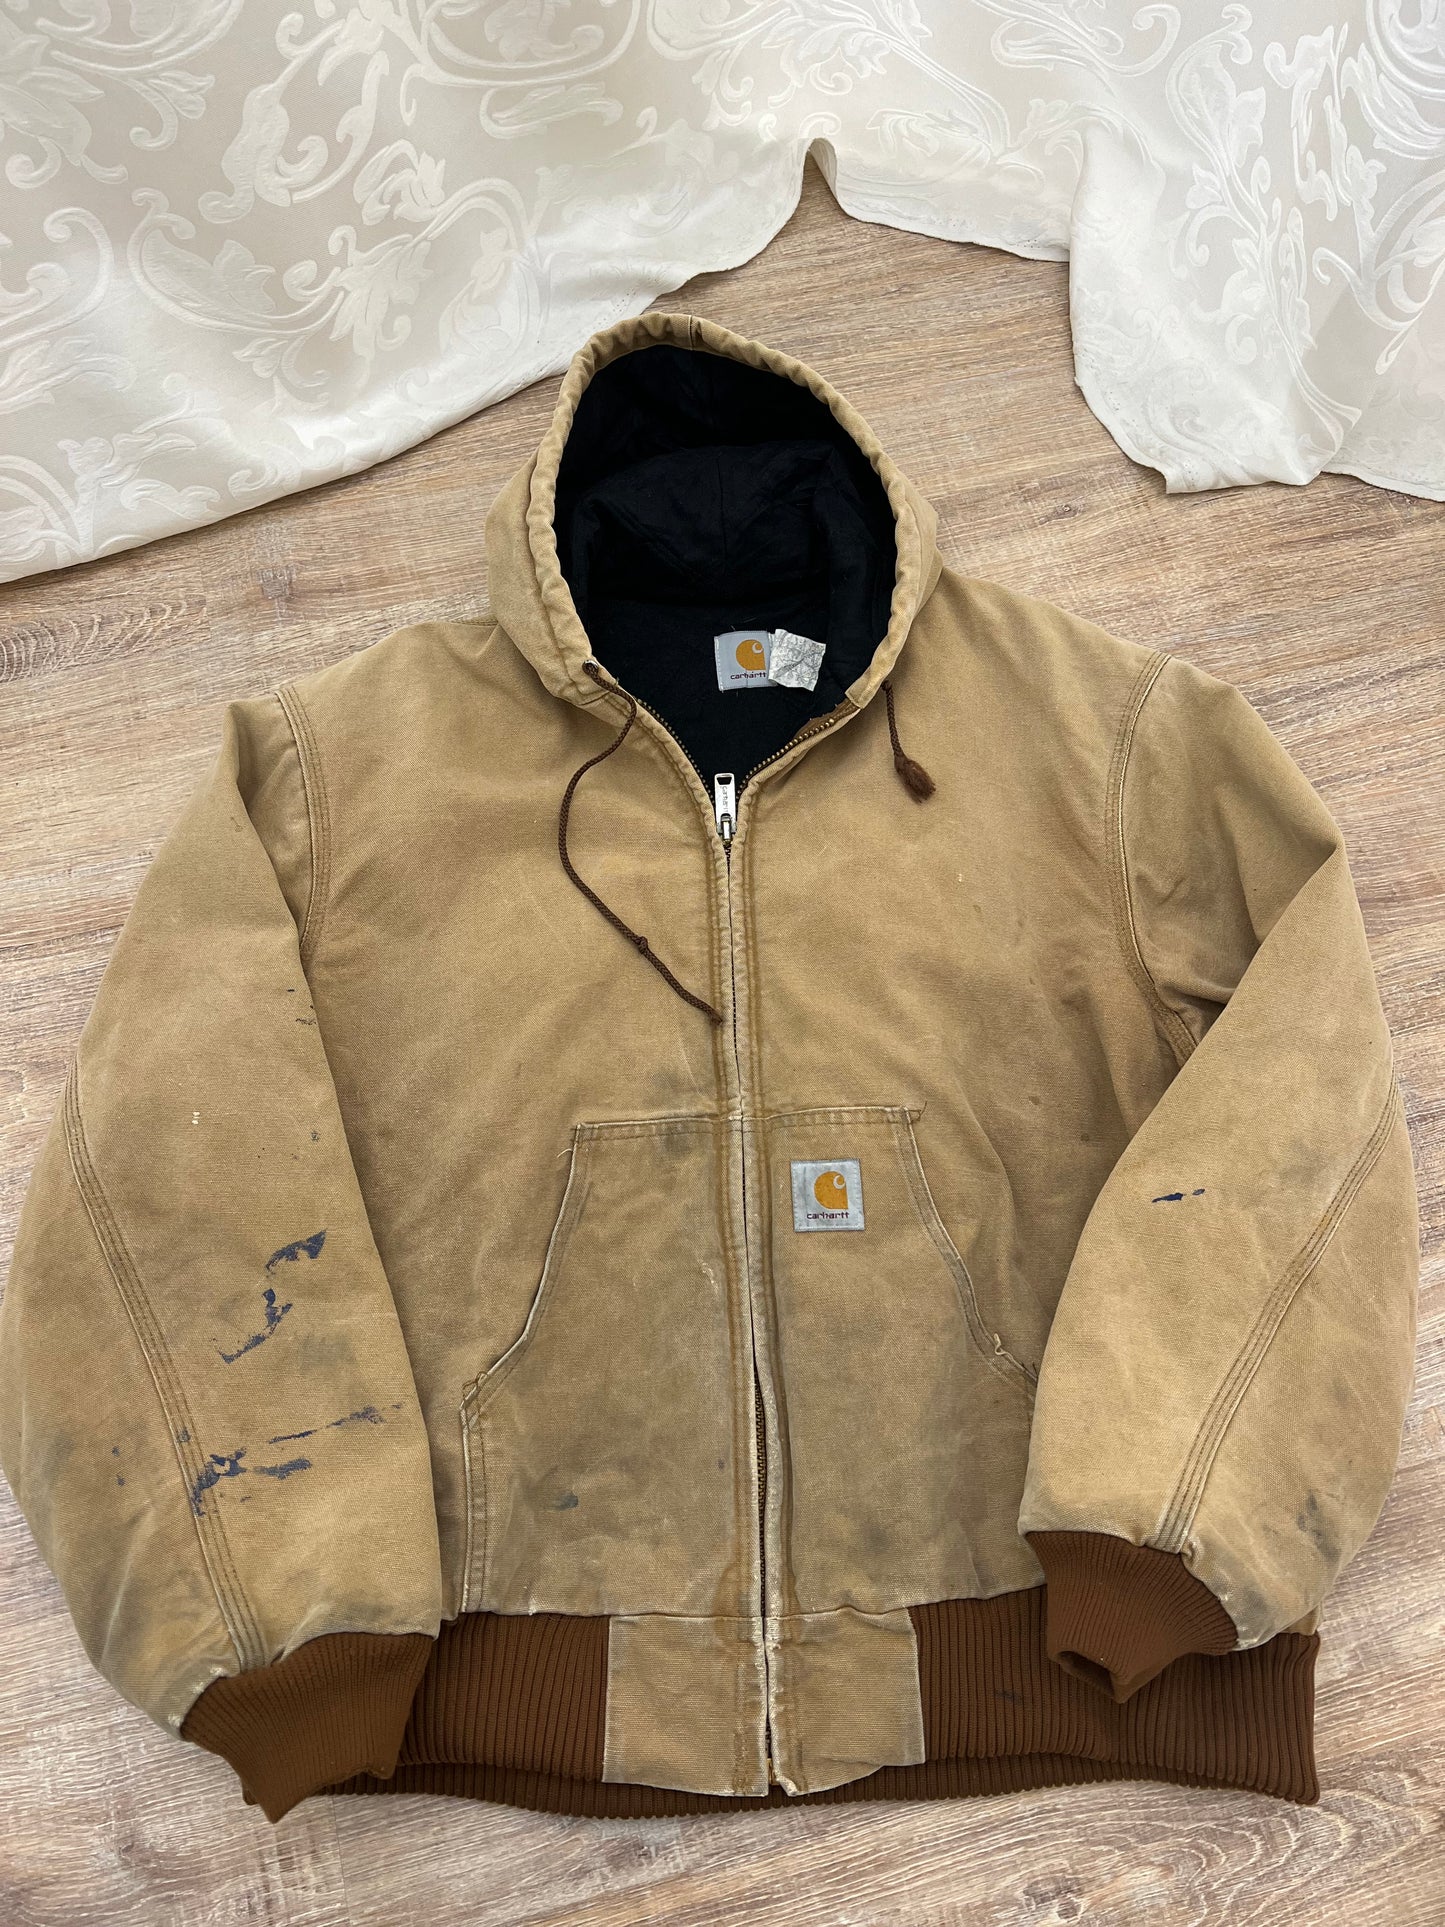 Vintage Carhartt Jacket